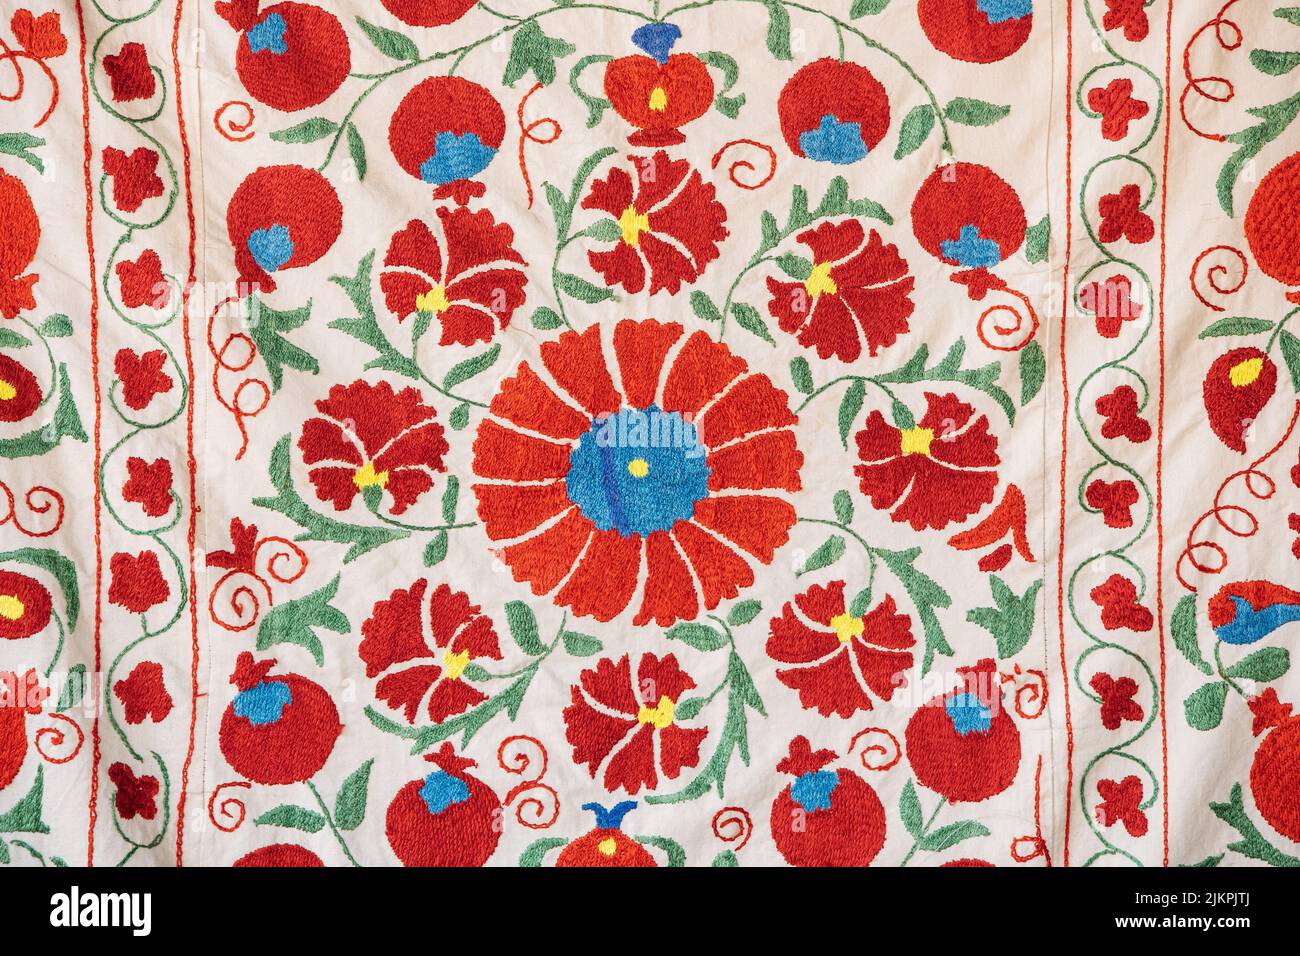 Parte de la textura de la alfombra, ornamento abstracto. Bordado floral tradicional sobre alfombra ligera. Bordado floral de satén hecho a mano. Imagen de primer plano Foto de stock